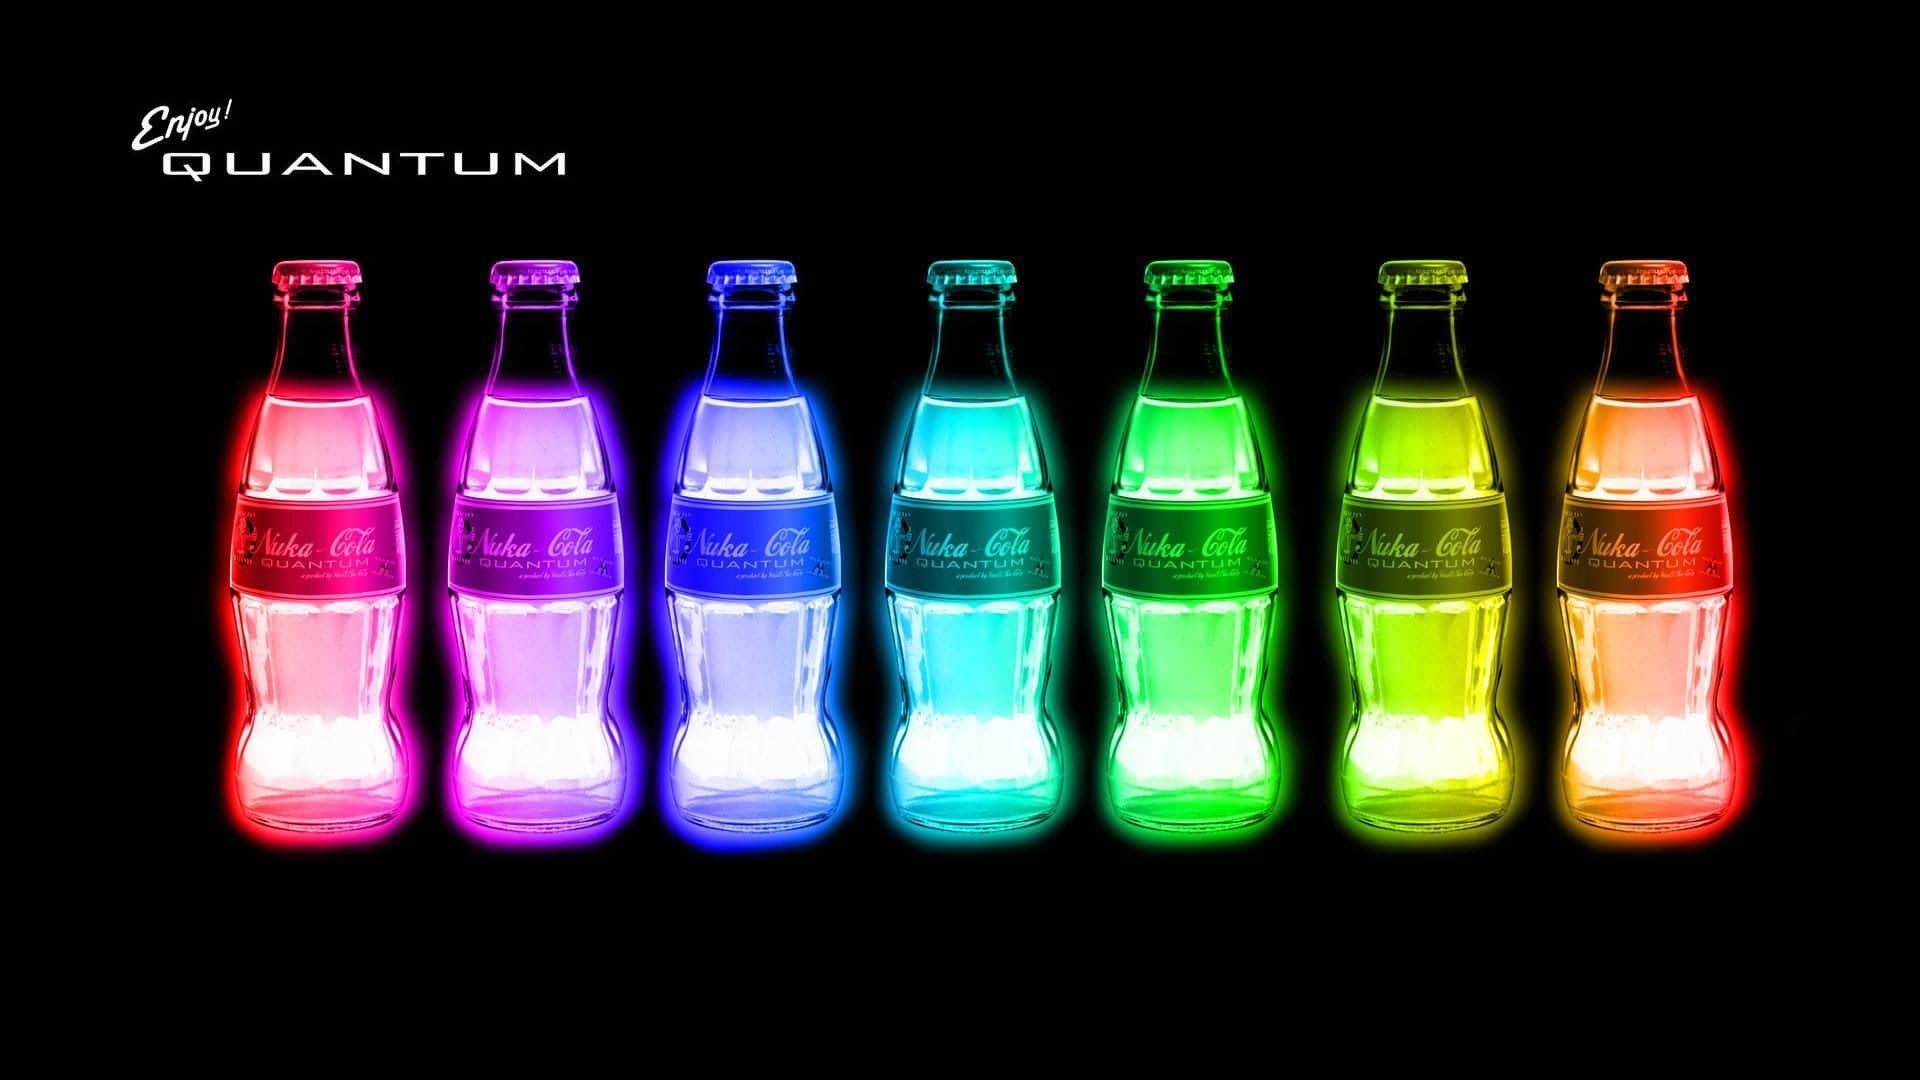 Ungrupo De Botellas De Coca-cola Coloridas Con La Palabra 